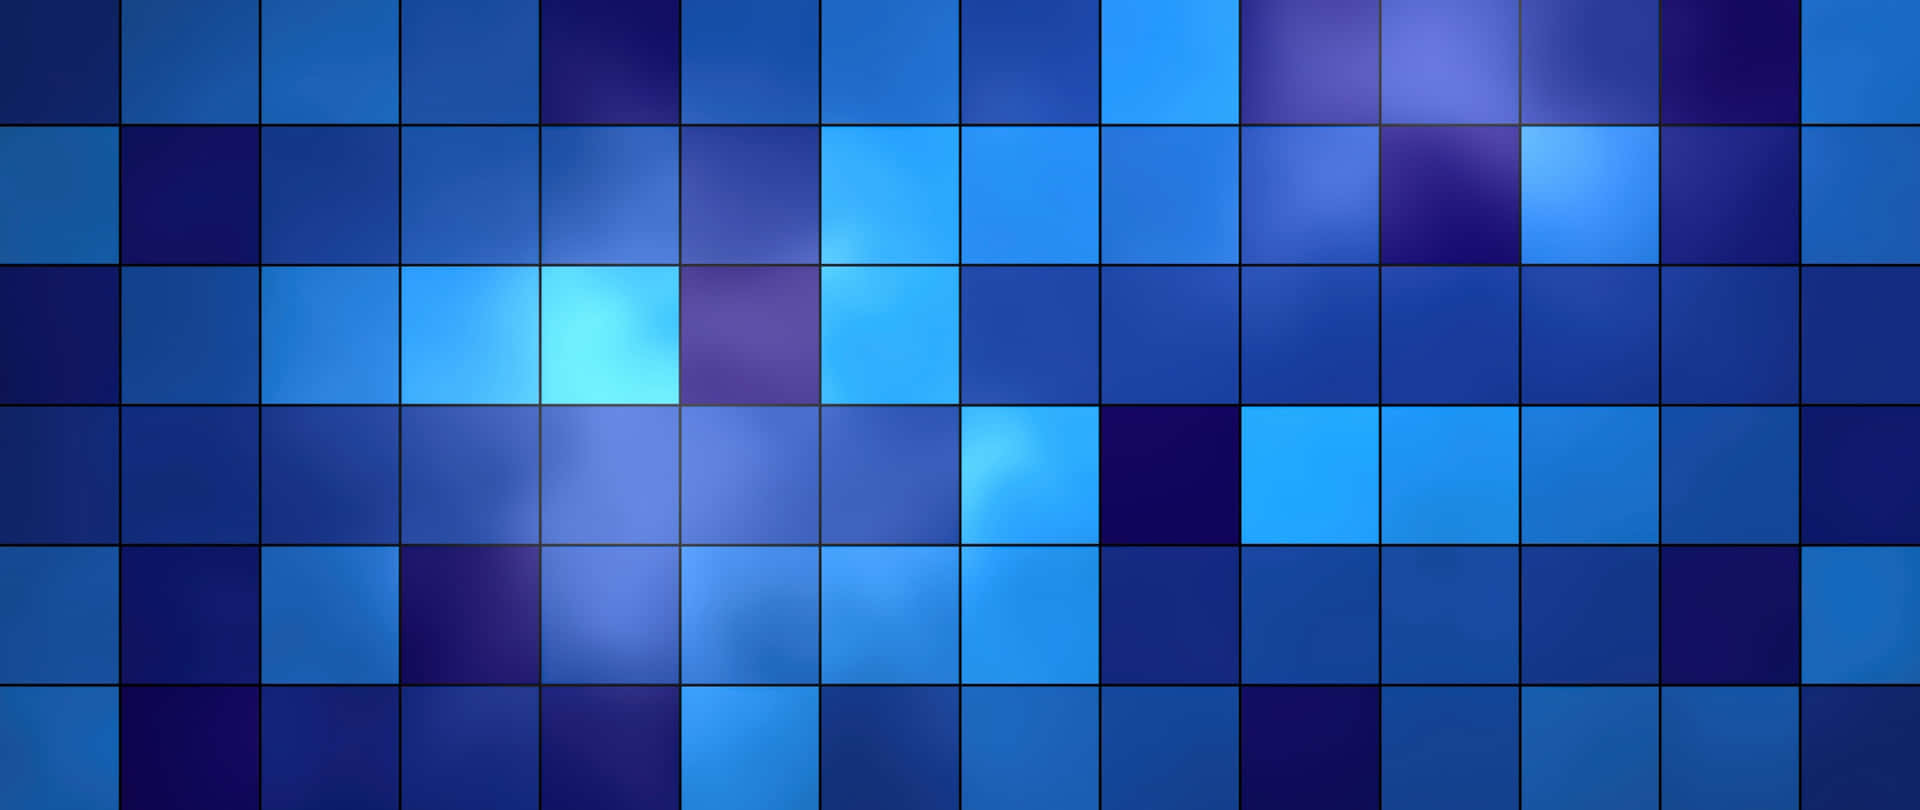 500+] Light Blue Wallpapers | Wallpapers.com